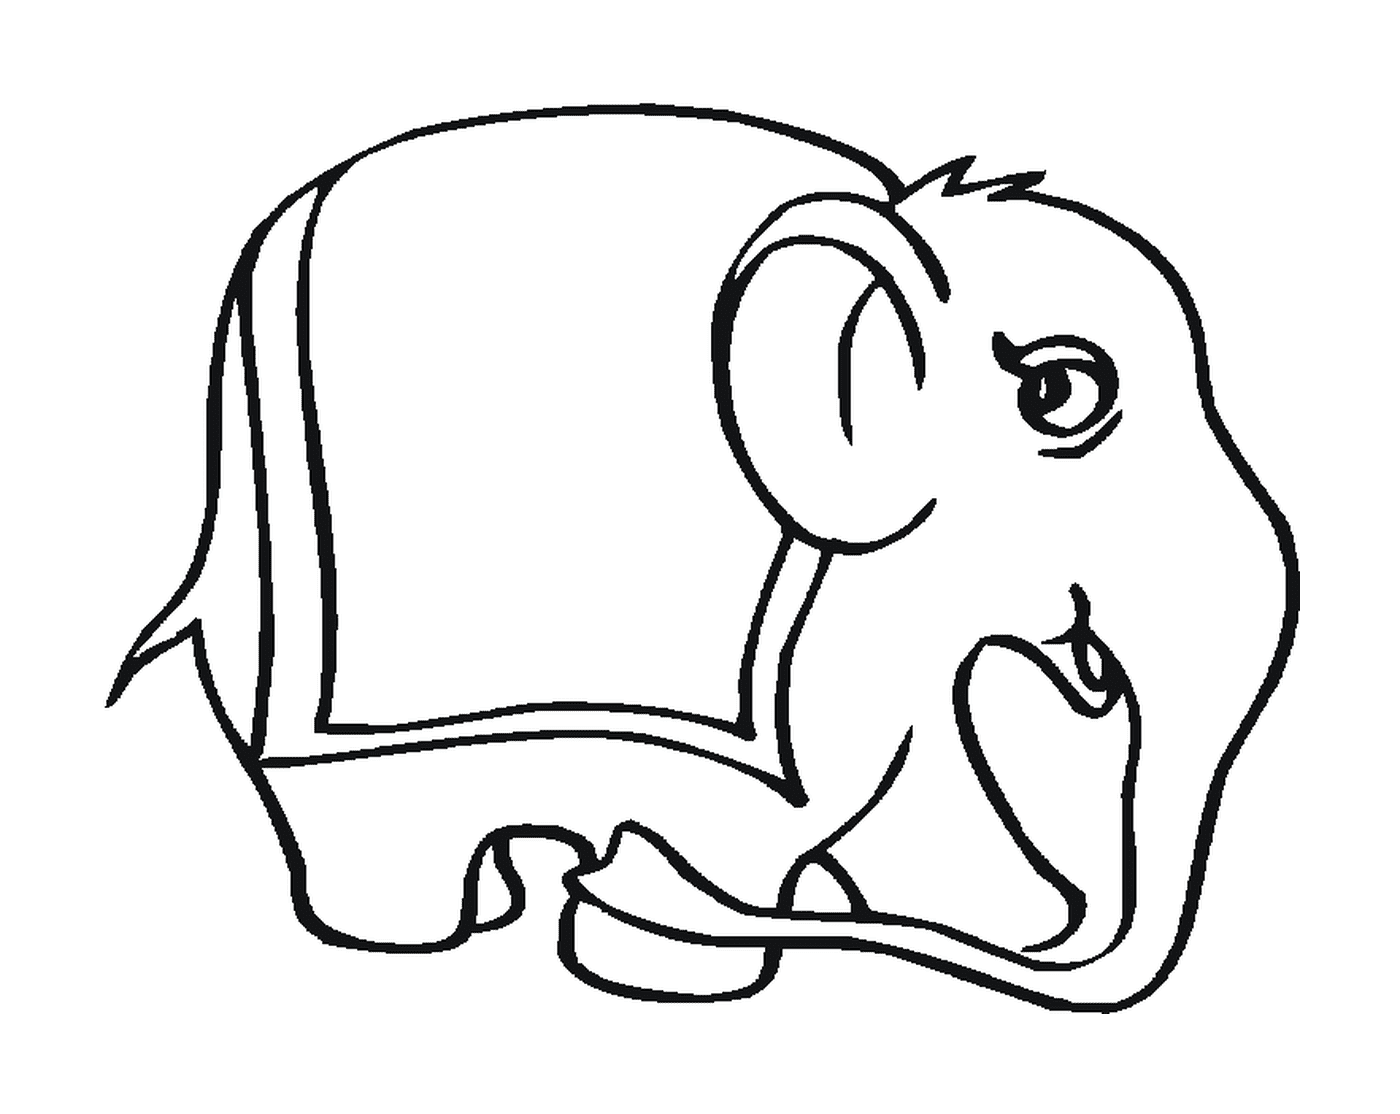  Ein Elefant mit einer sitzenden Silhouette 